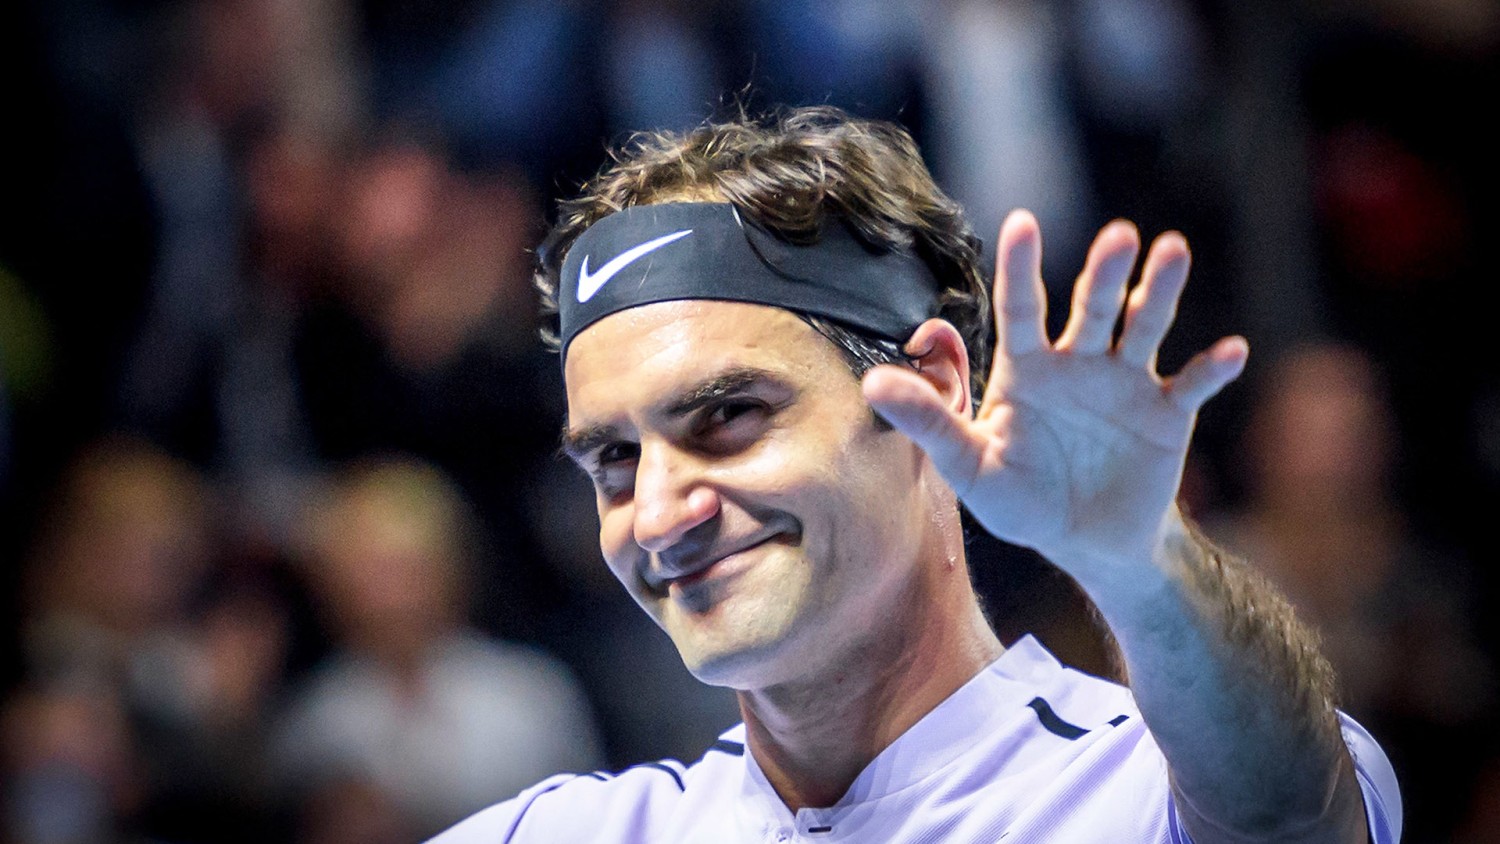 Roger Federer, winner of 20 major singles titles, announces retirement from tennis